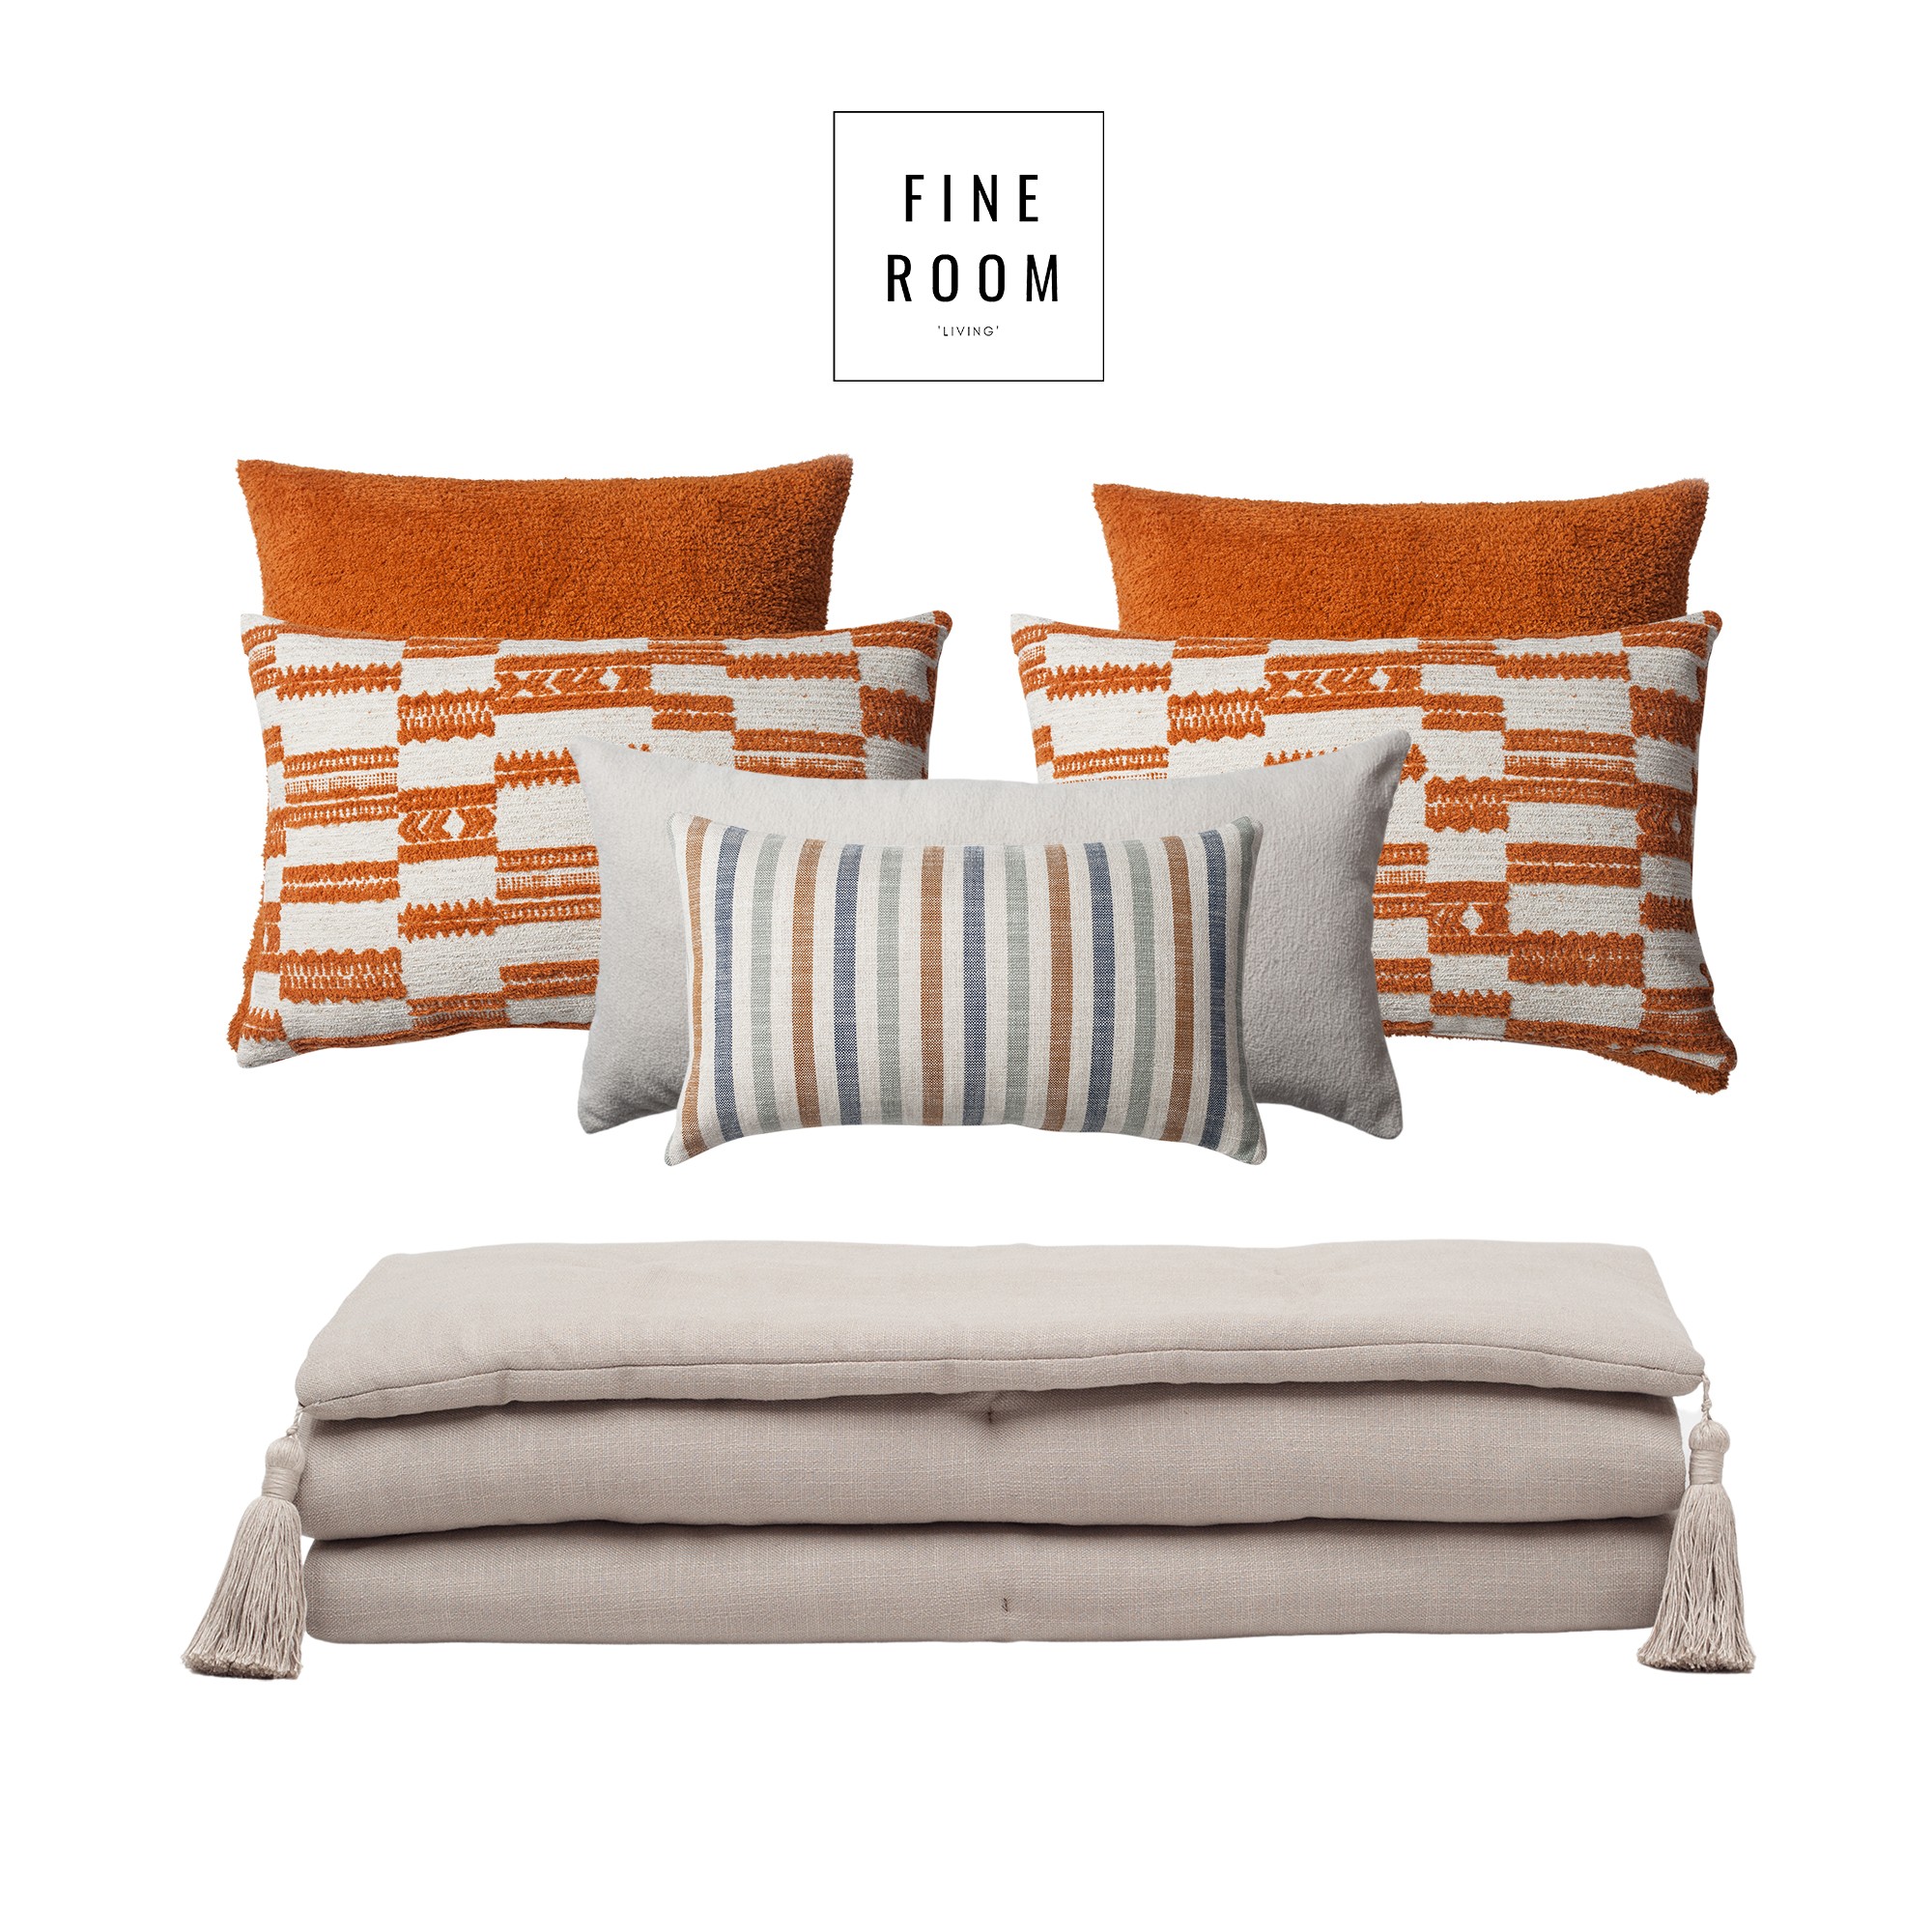 "Loom" Linen Tasseled Bed Runner + 6 Pillow Set Surya Capri - Orange (Cover Only)